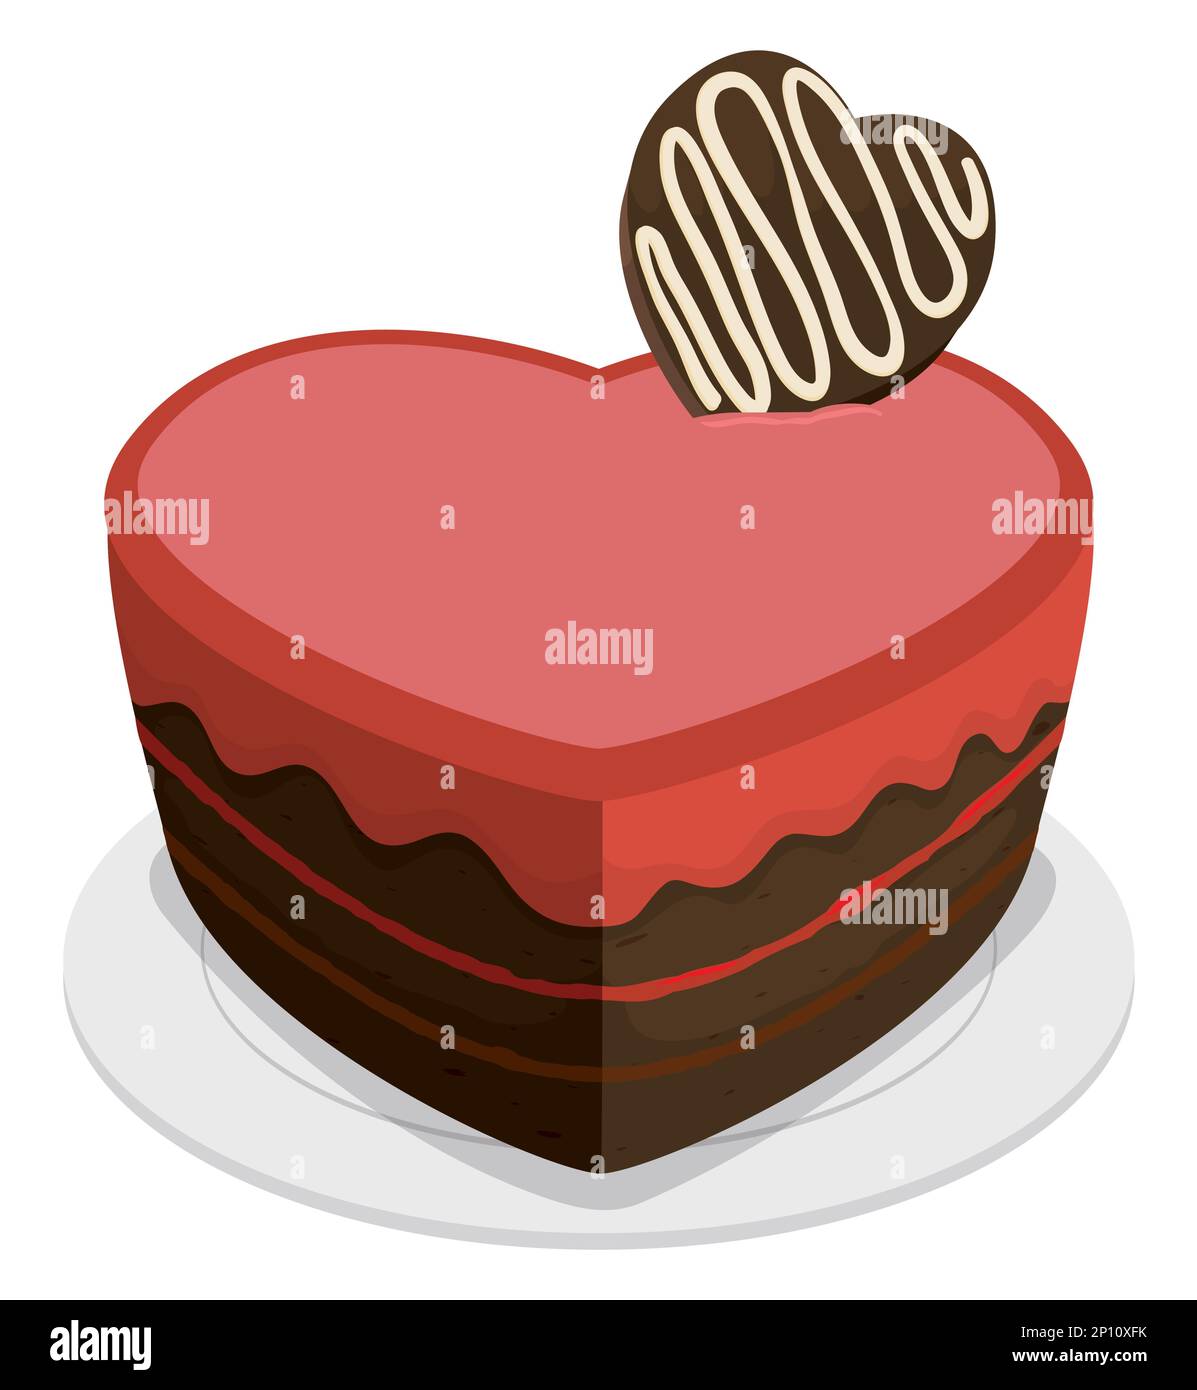 Herzförmiger Kuchen mit rotem Überzug und Schokoladenbonbons auf dem Teller. Design im Cartoon-Stil auf weißem Hintergrund. Stock Vektor